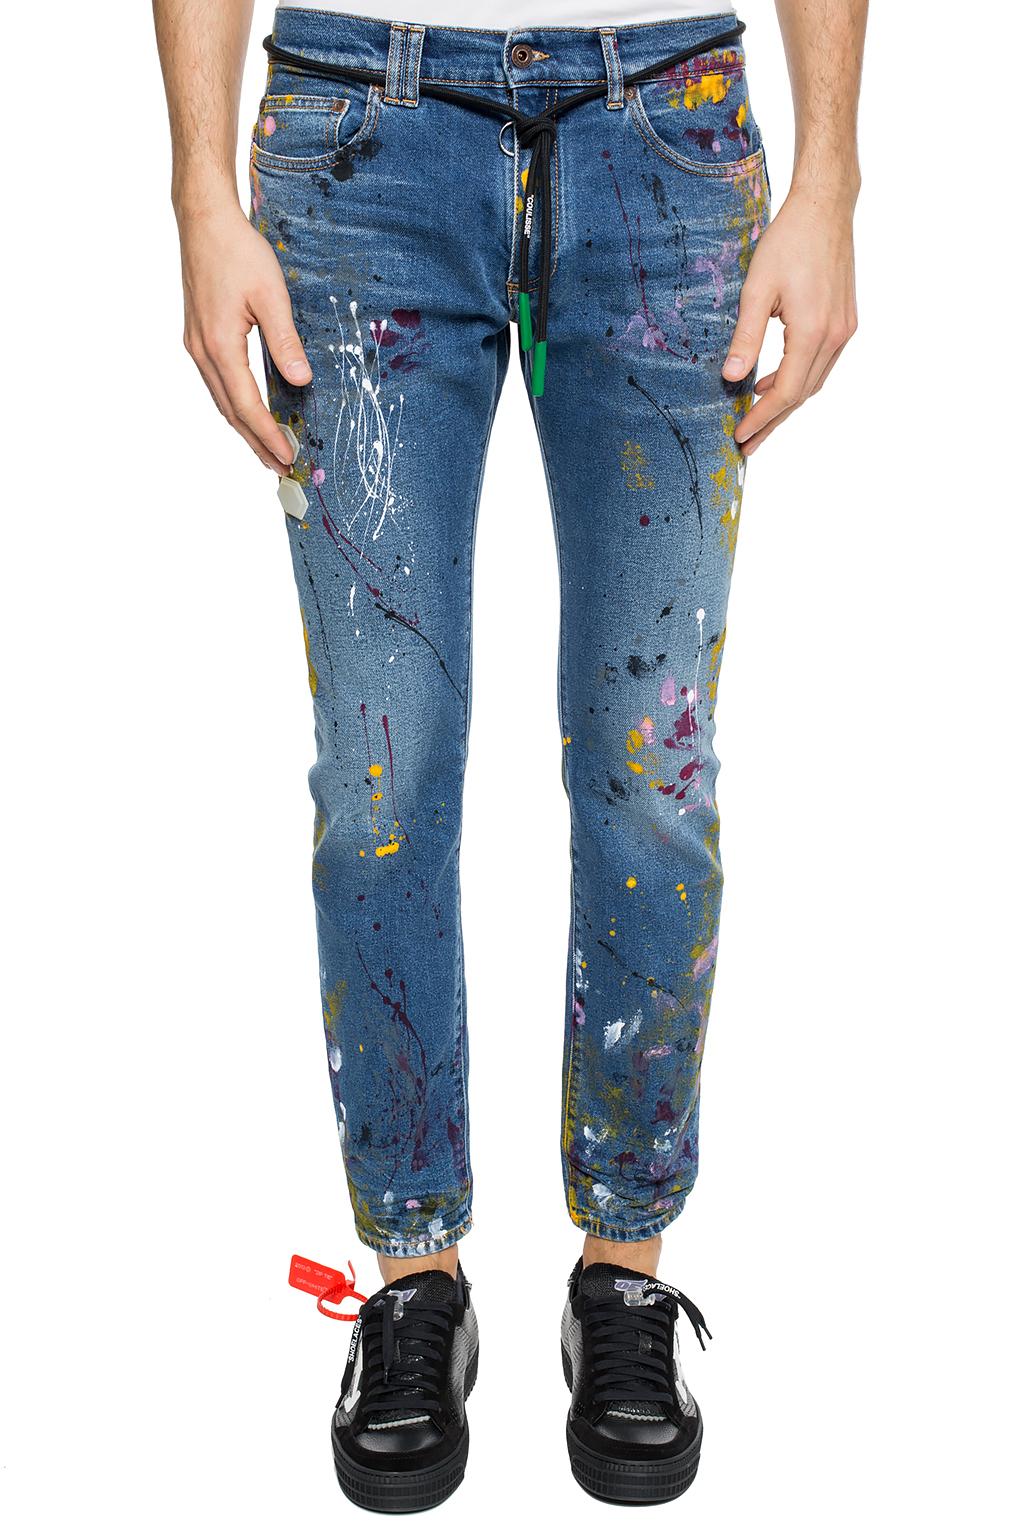 off white paint splatter jeans